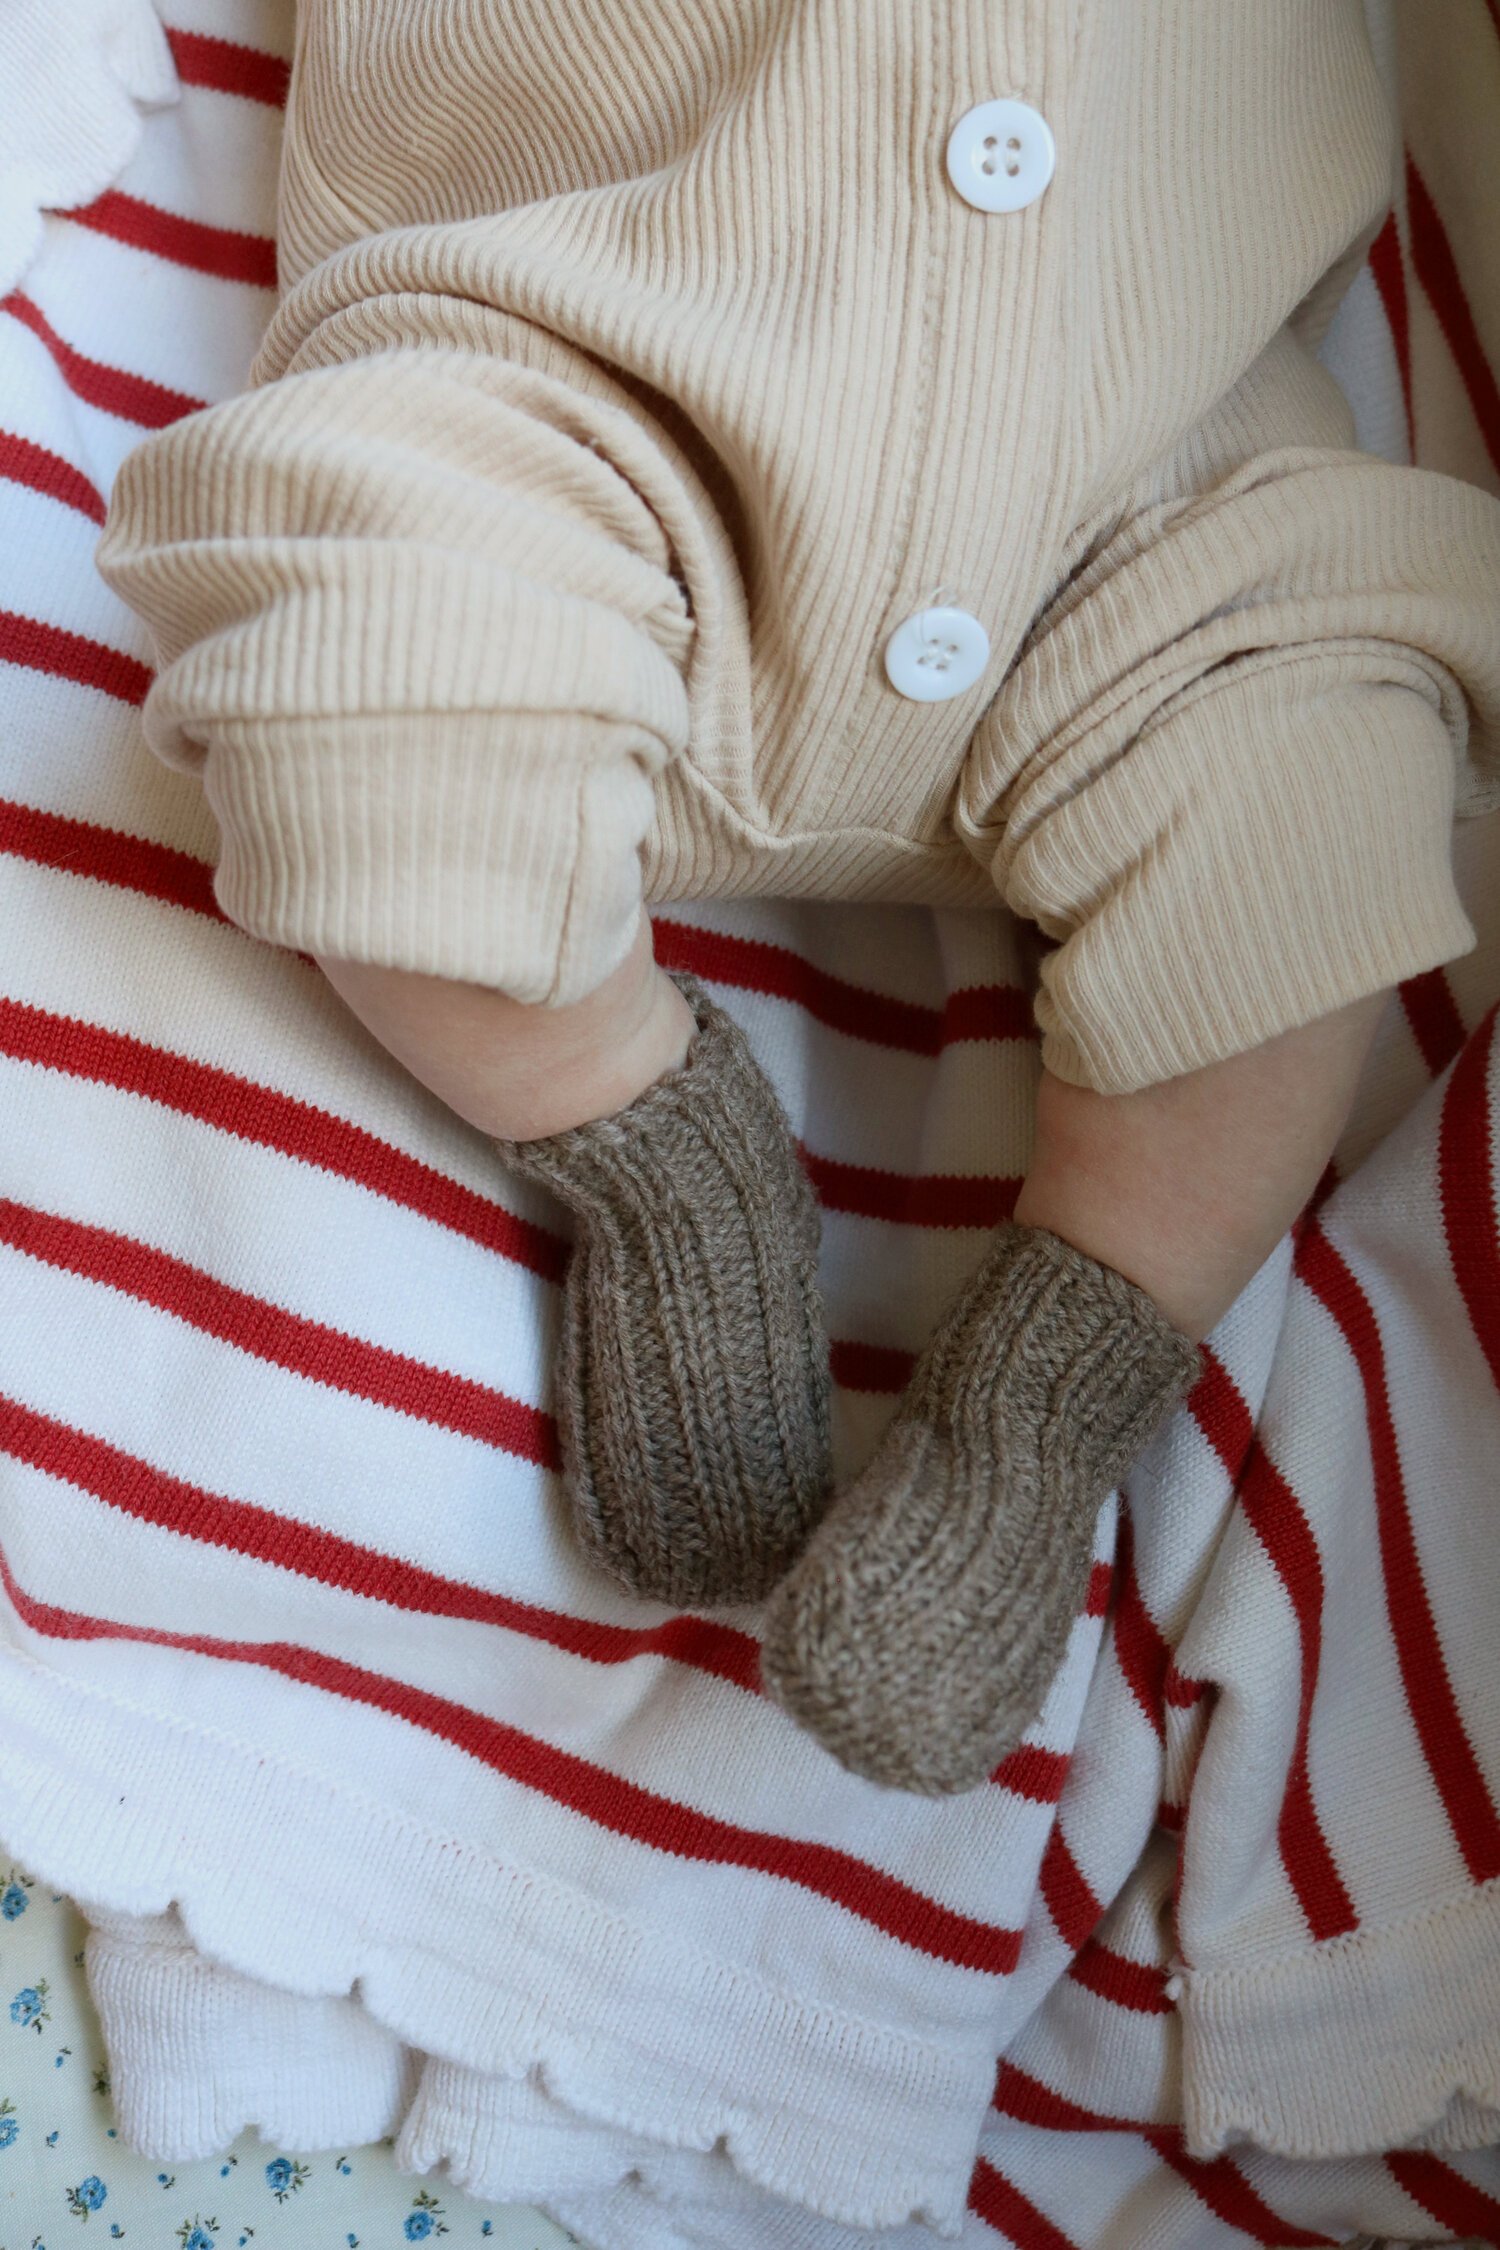 Bitty & Cozy Newborn Socks Knitting Pattern (FREE!) — Under A Tin Roof